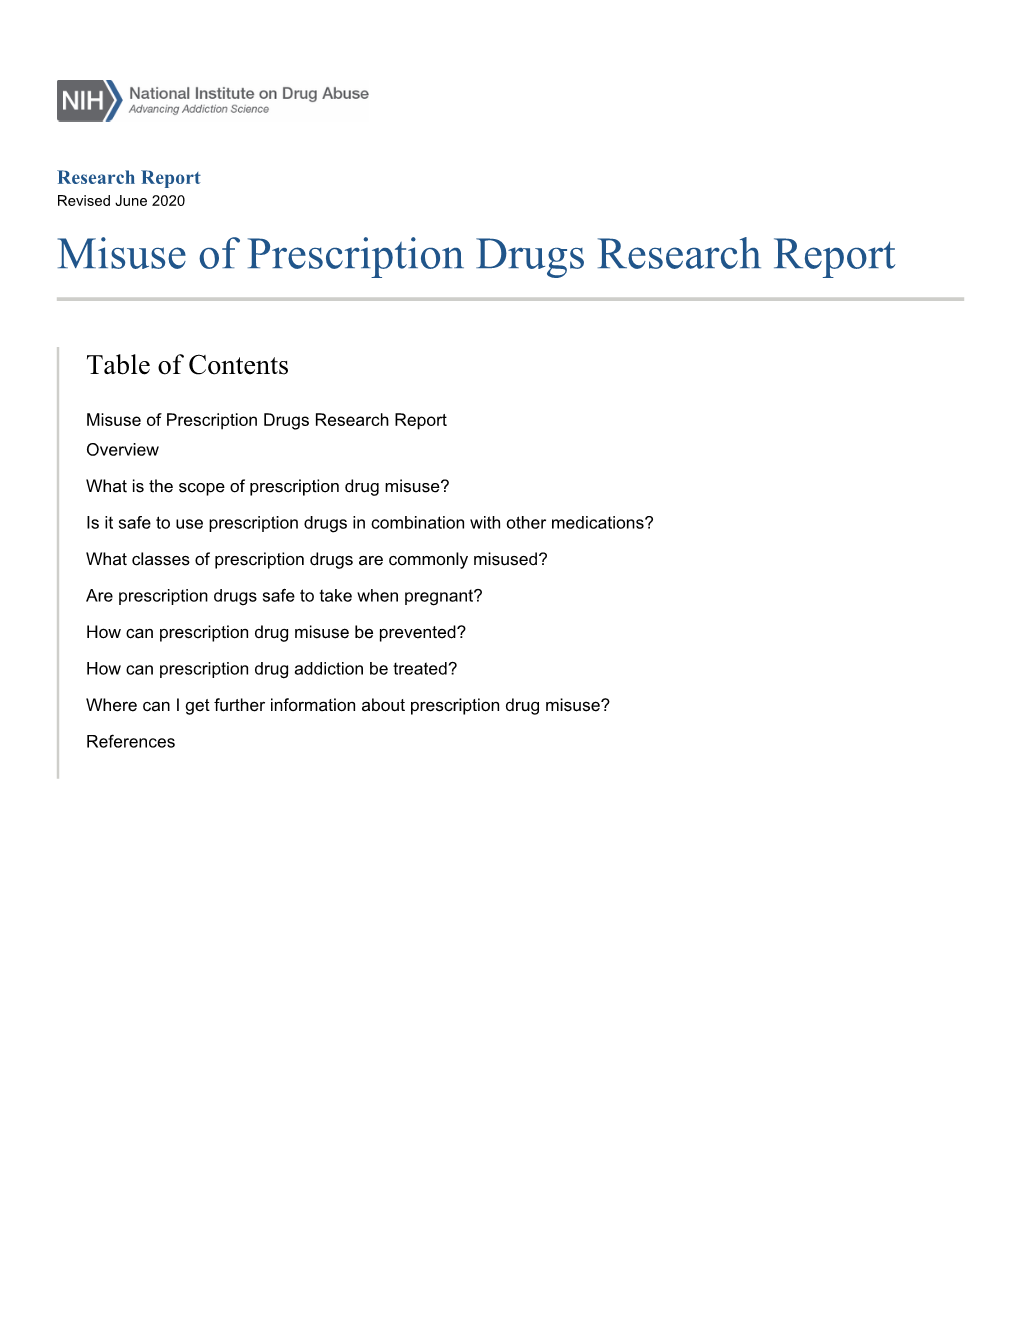 Misuse of Prescription Drugs Research Report